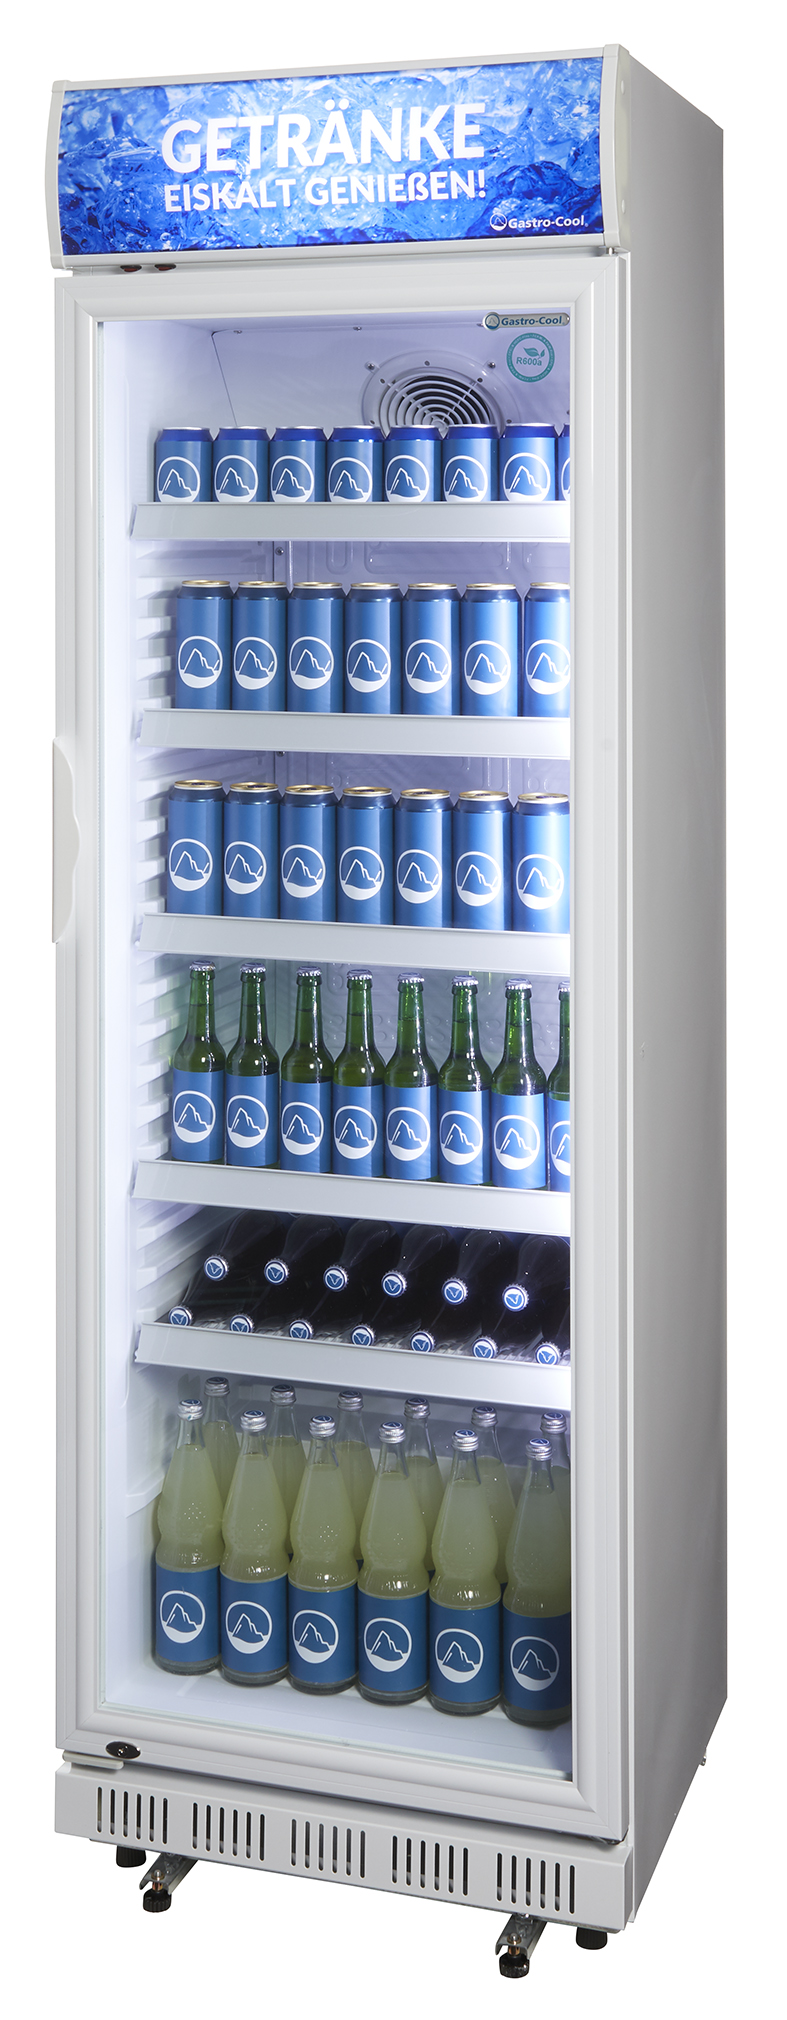 Gastro-Cool - Glastürkühlschrank mit Werbedisplay - weiß - GCDC400 - seitlich gefüllt